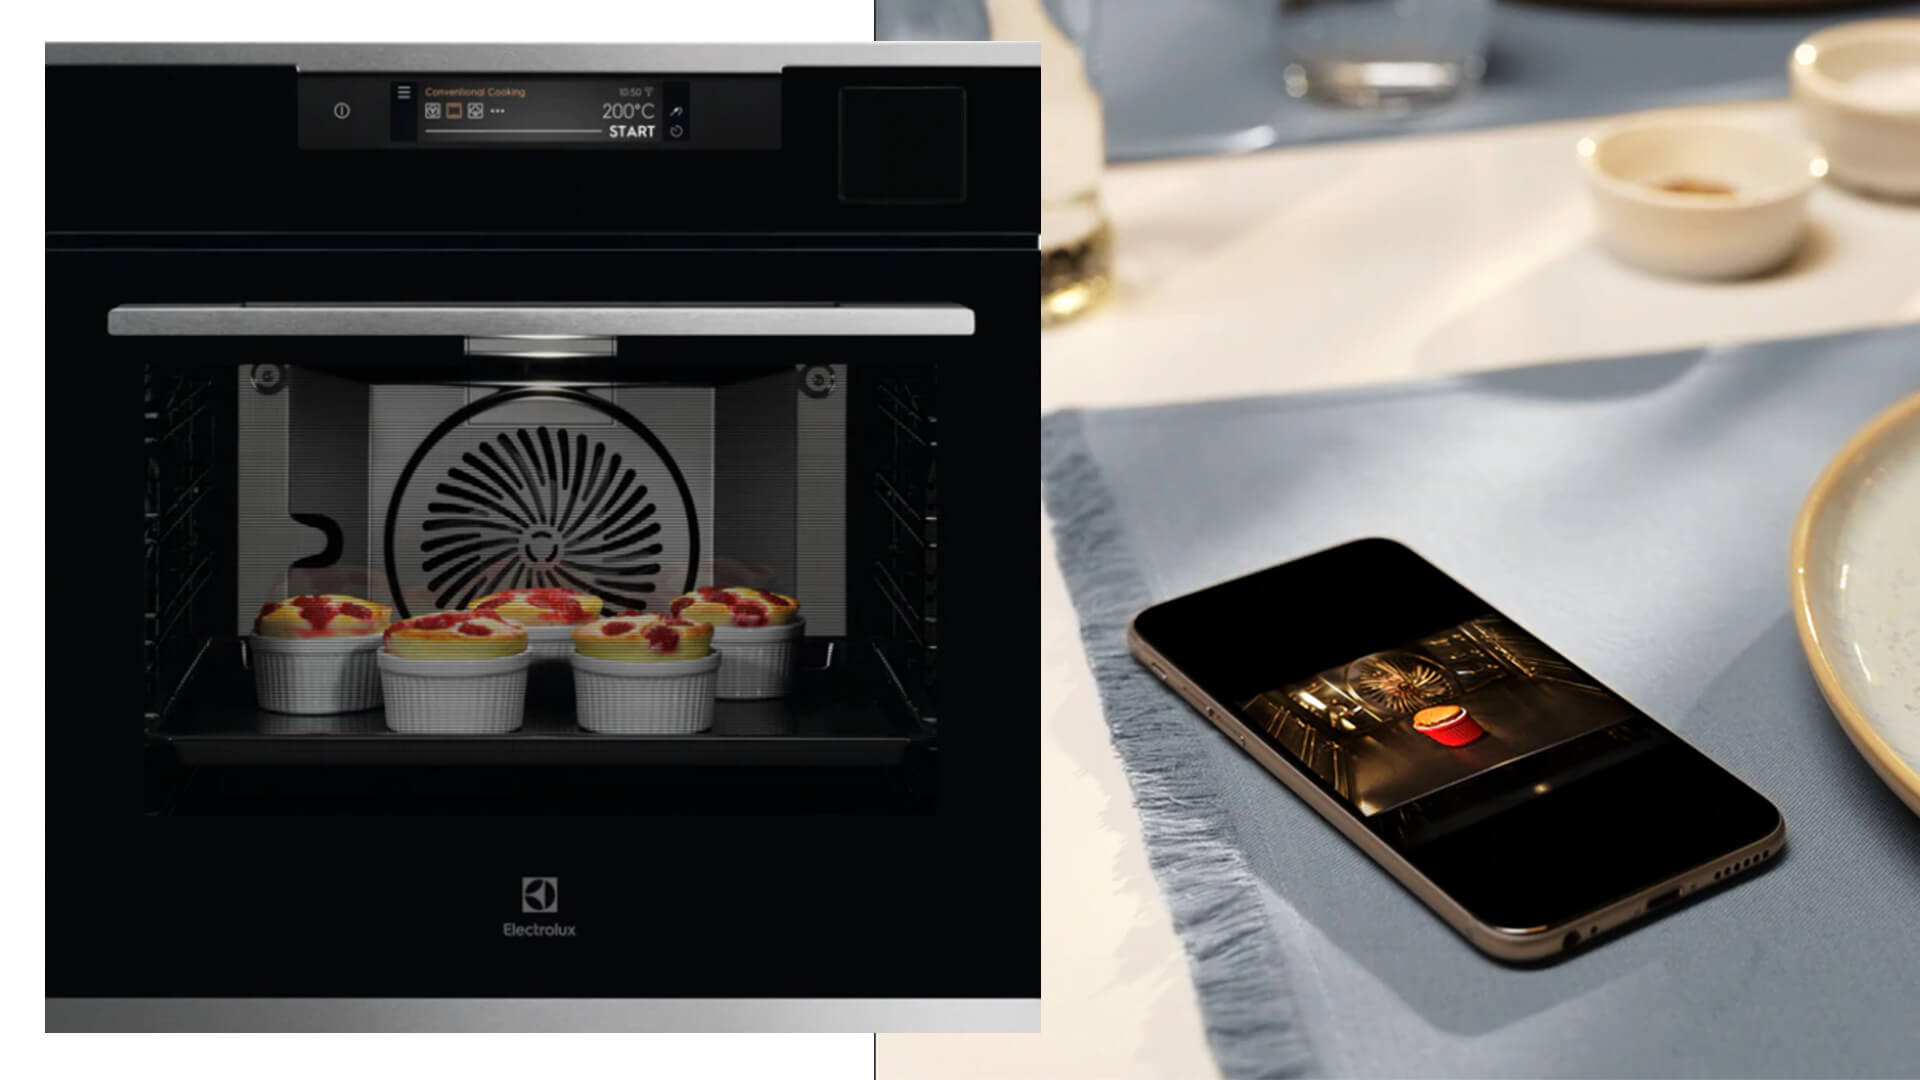 Blog IDW - Scegliere il forno elettrico da cucina: esigenze personali e nuove funzionalità